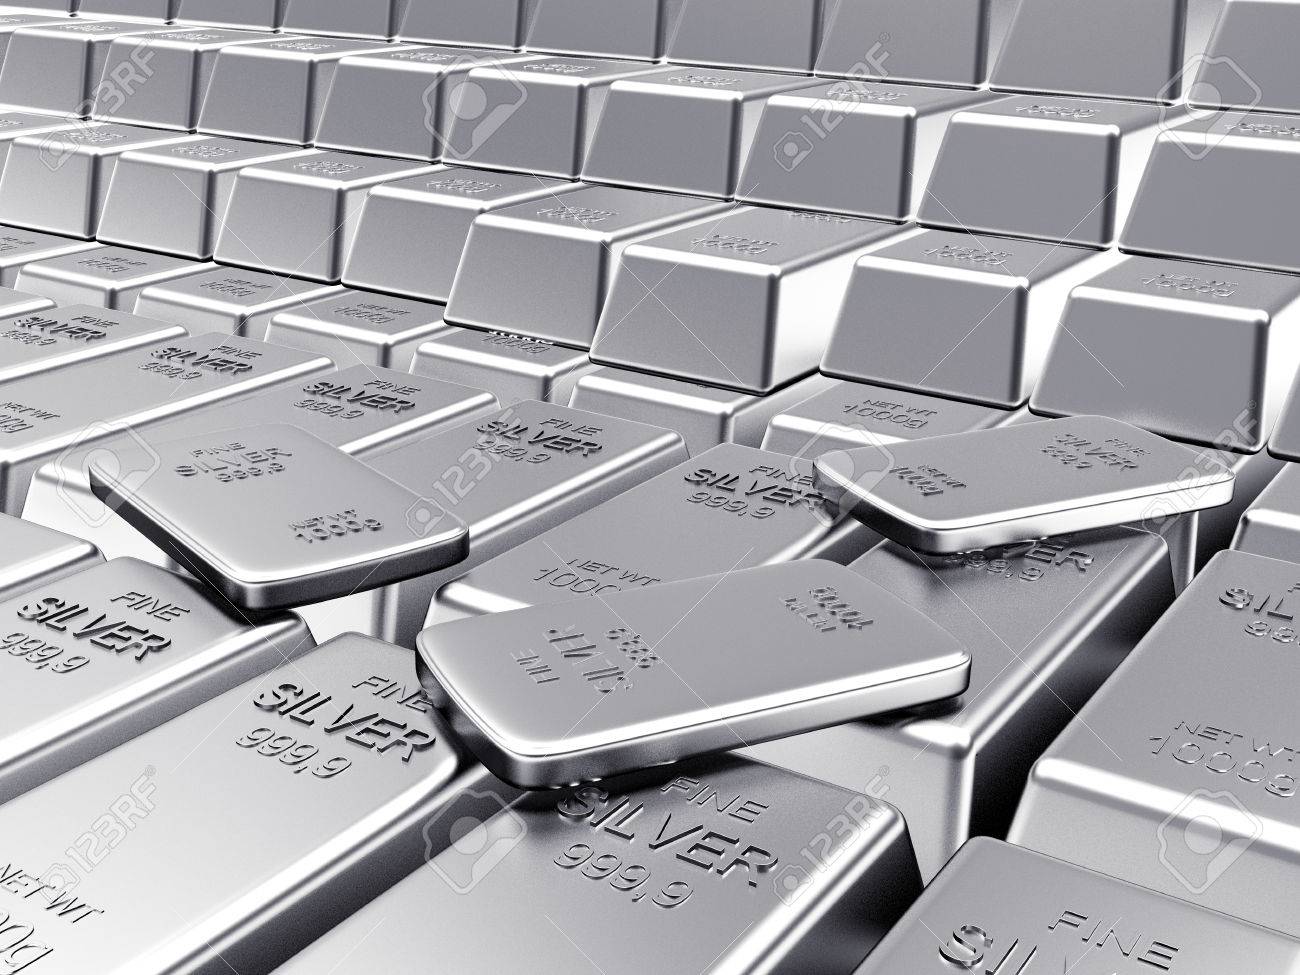 ارتفاع في أسعار الفضة خلال يوليو لأعلى زيادة منذ ١٩٨٢